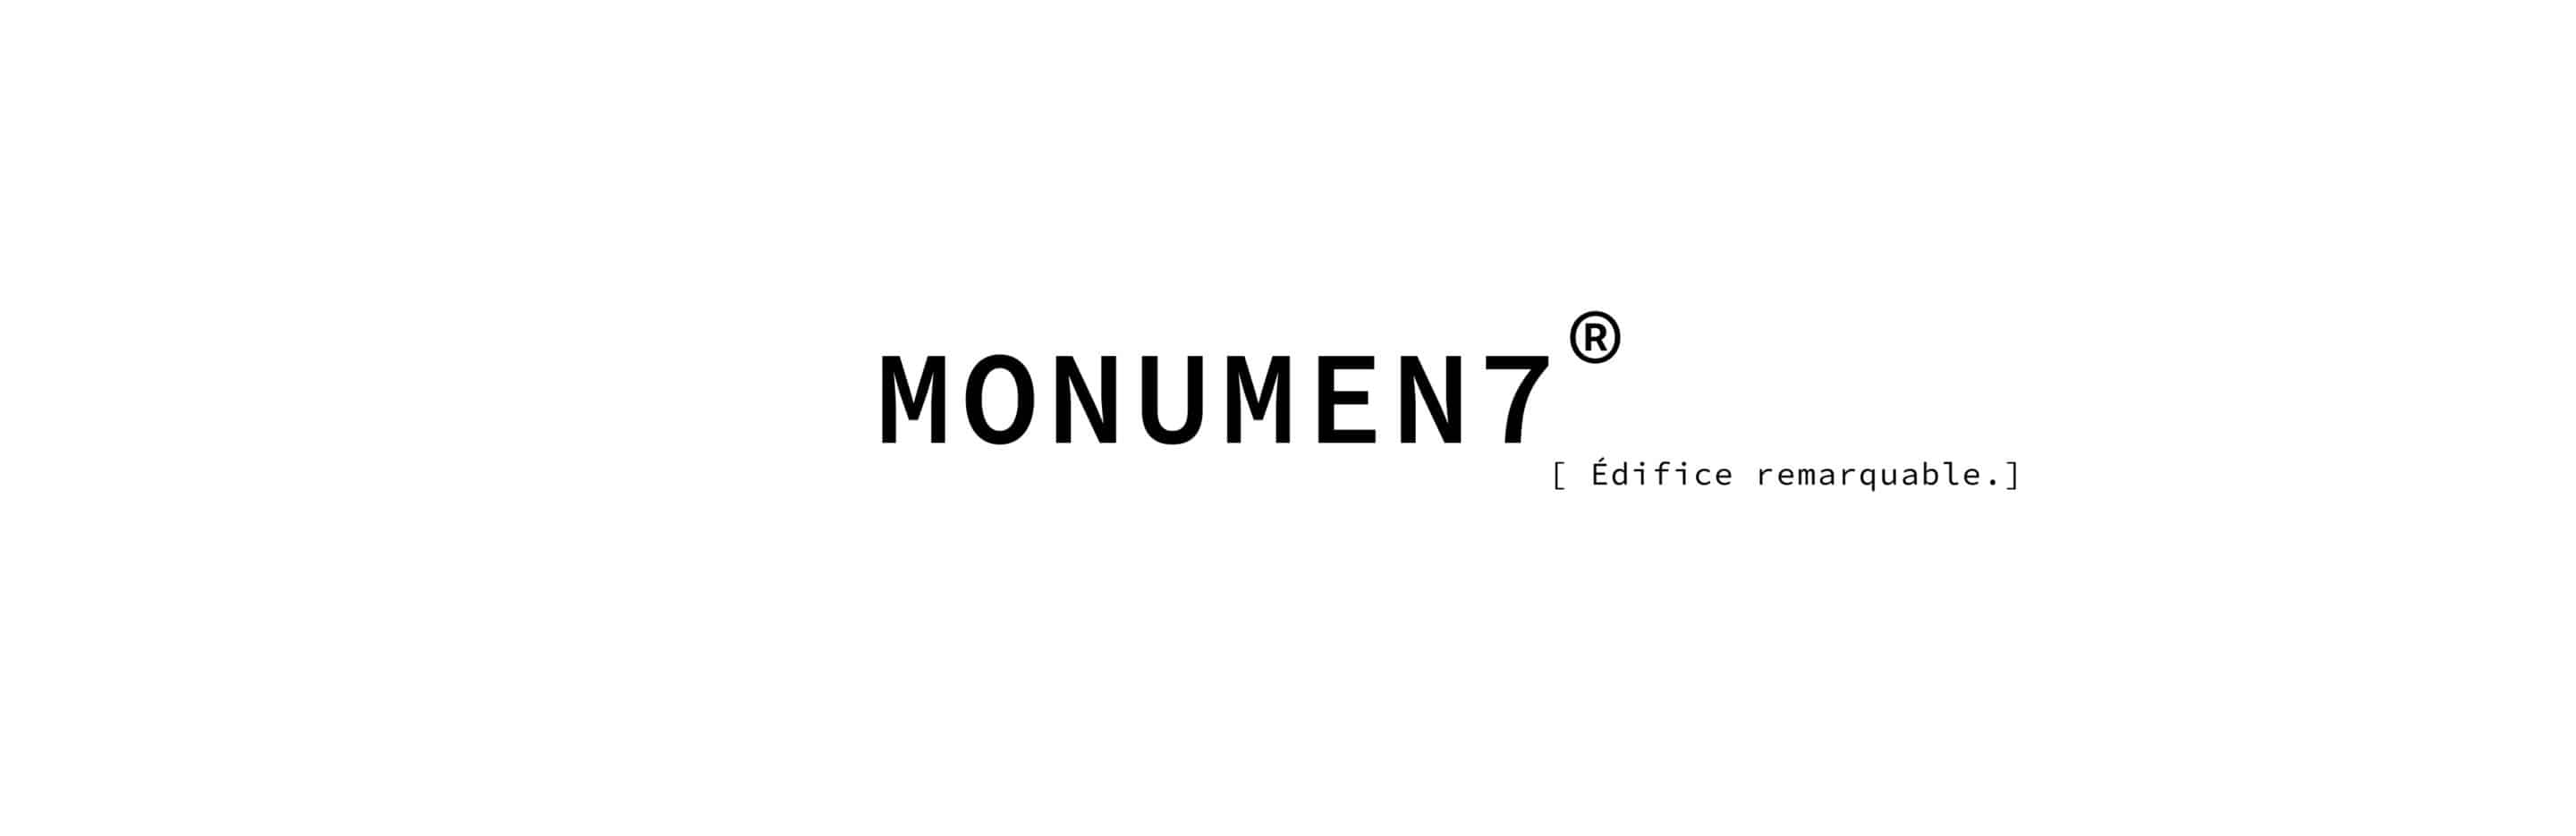 MØNUMEN7® - Marque de vêtement prmium, ethique et durable.